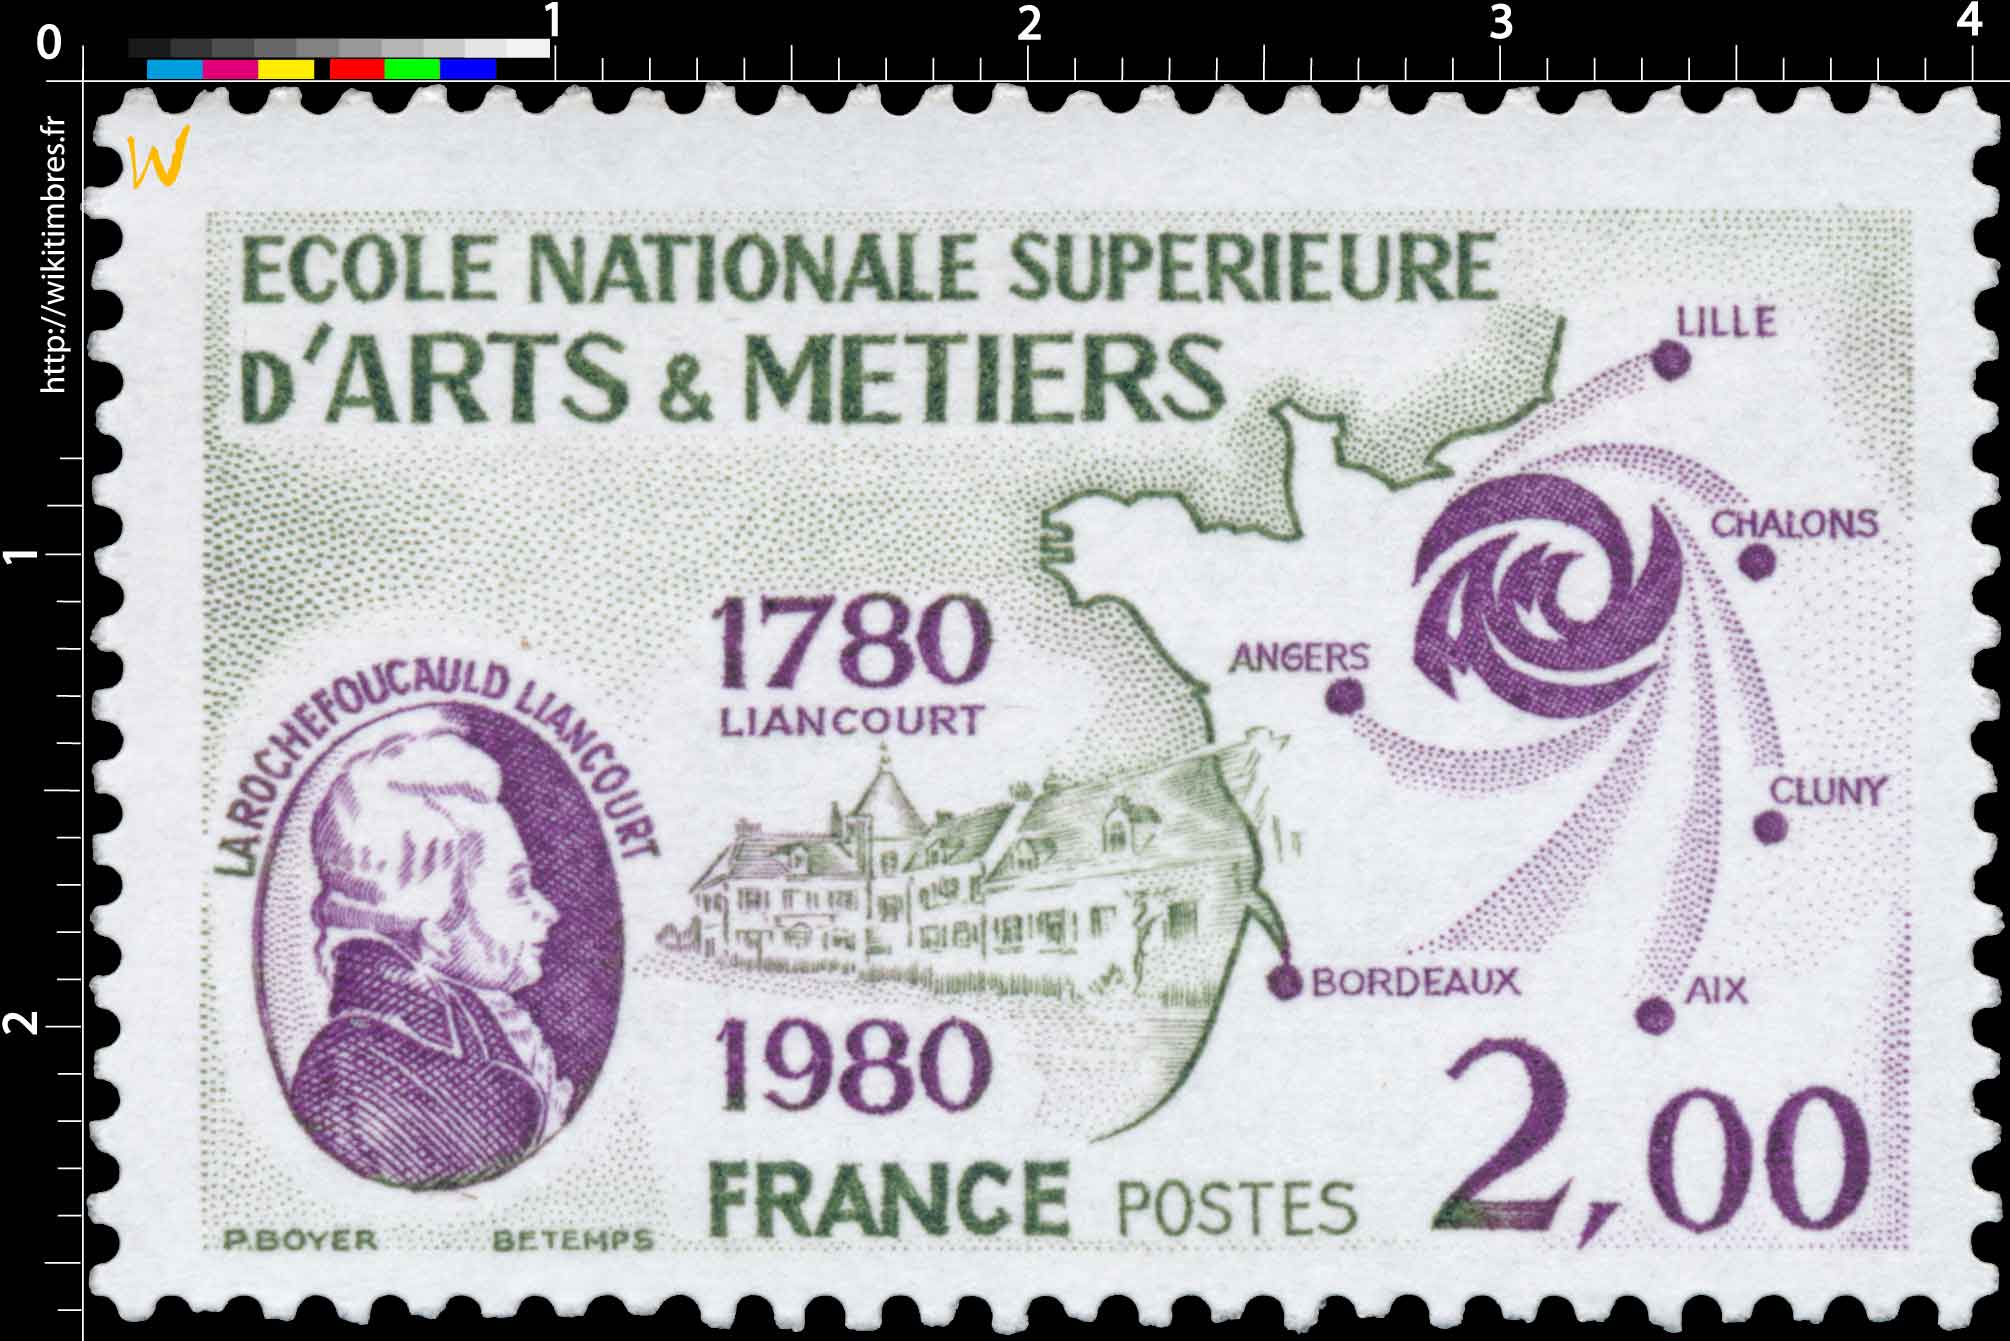 ÉCOLE NATIONALE SUPÉRIEURE D'ARTS & MÉTIERS LA ROCHEFOUCAULD LIANCOURT 1780-1980 LILLE CHALONS CLUNY AIX BORDEAUX ANGERS